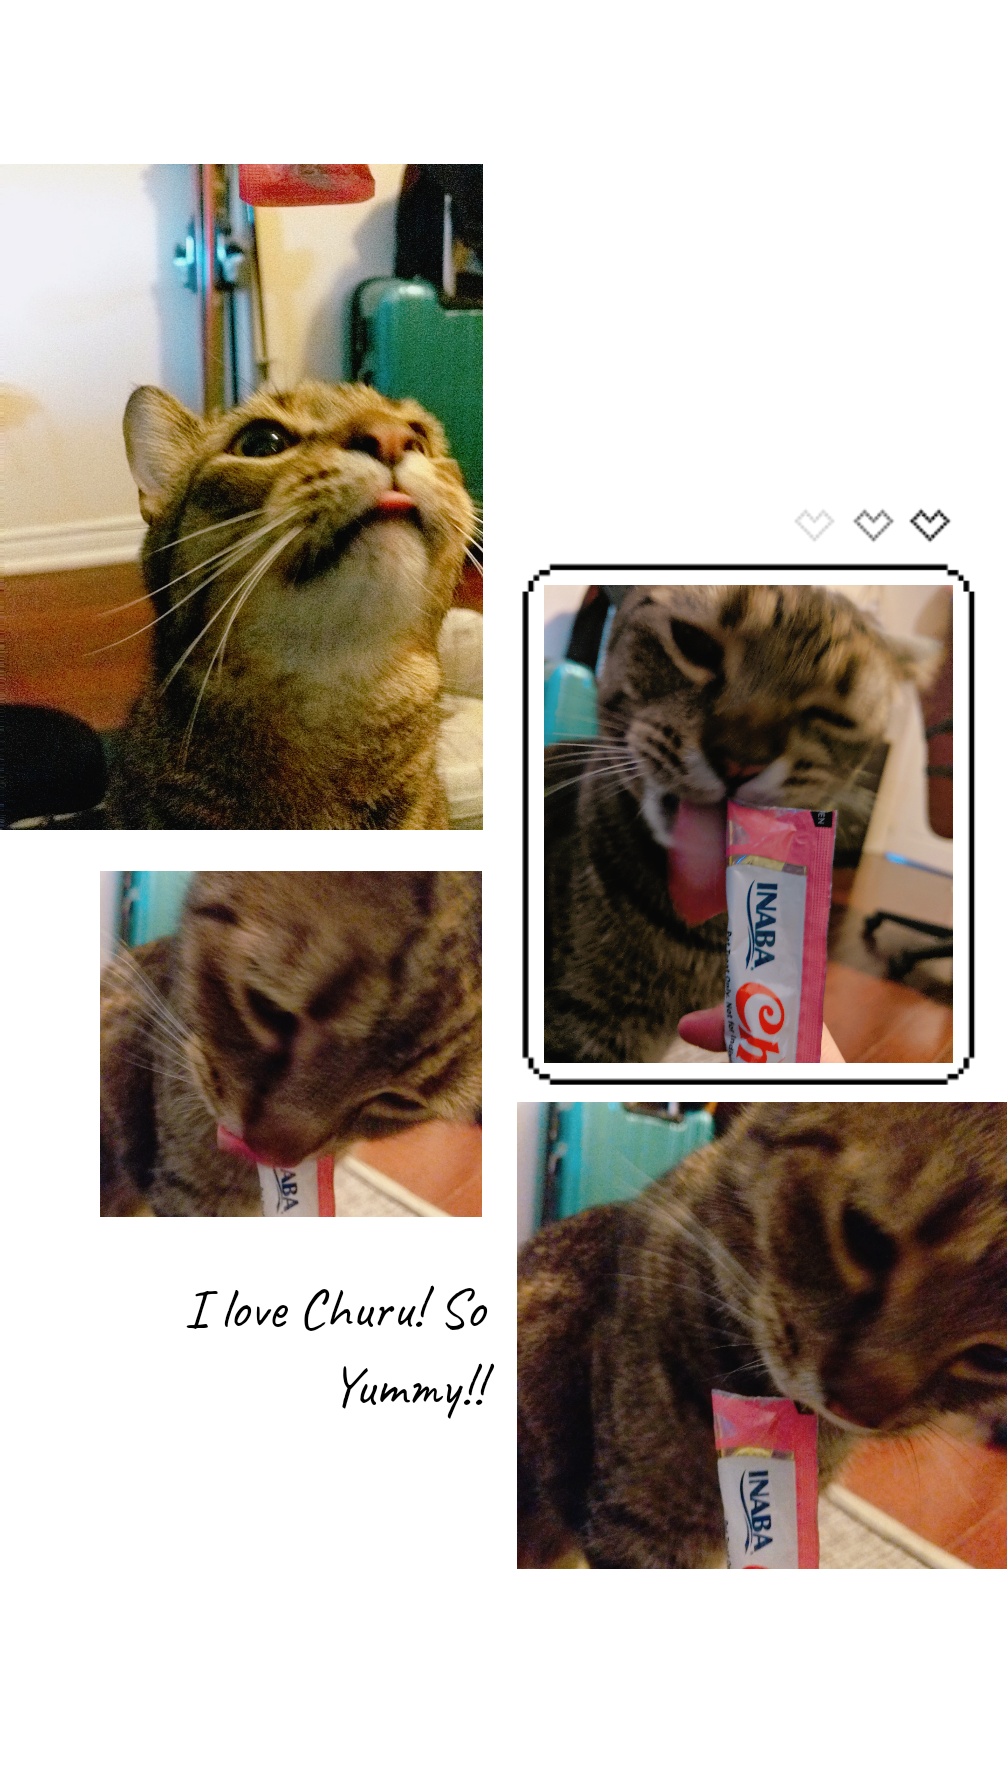 Inaba Churu – Japanese #1 cat treat